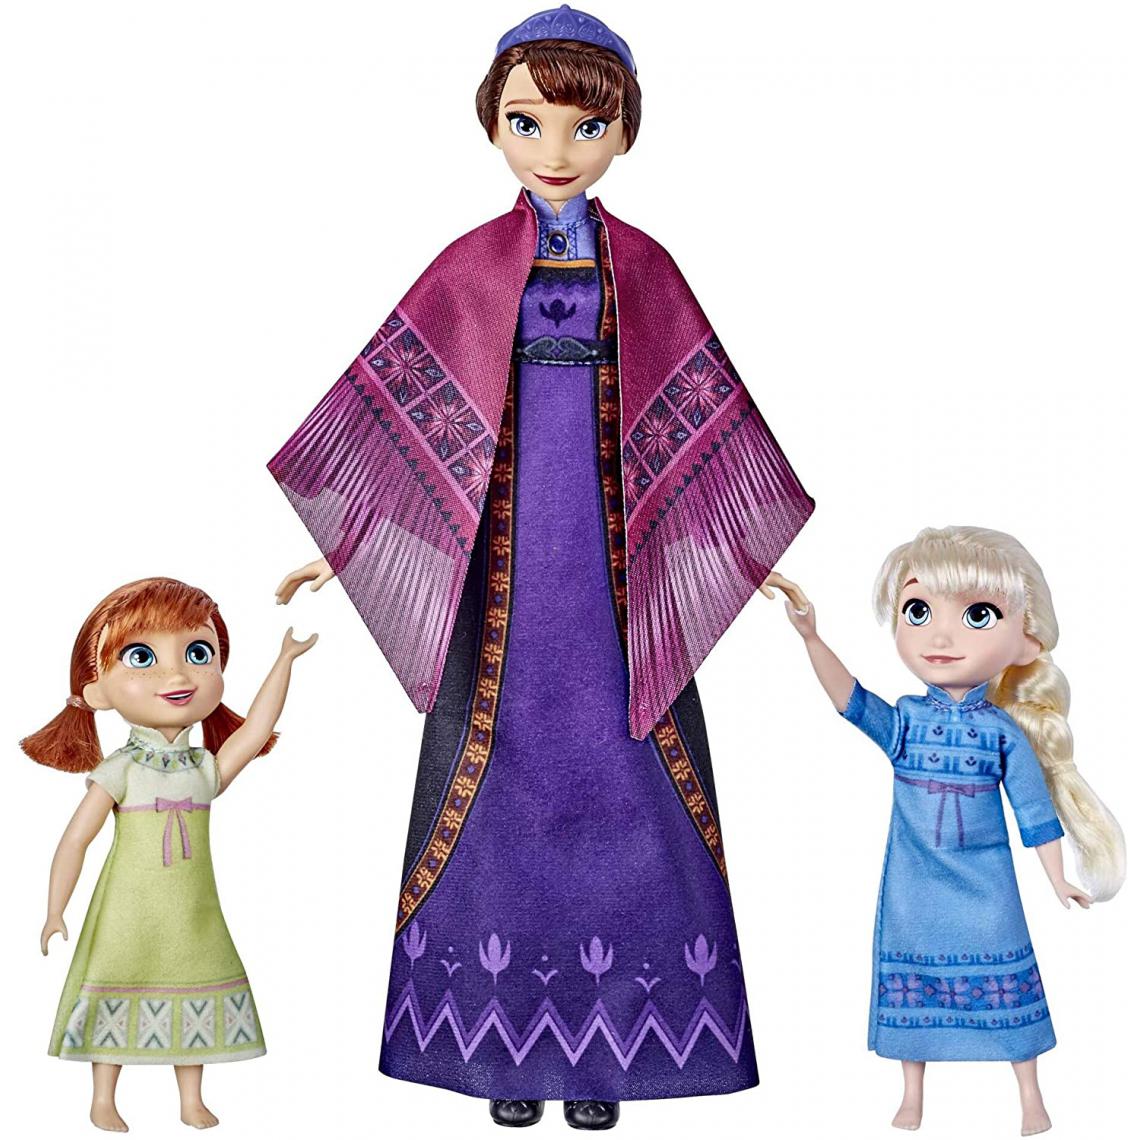 Disney Montres - poupées électroniques Elsa et Anna avec leur maman Iduna - Poupées